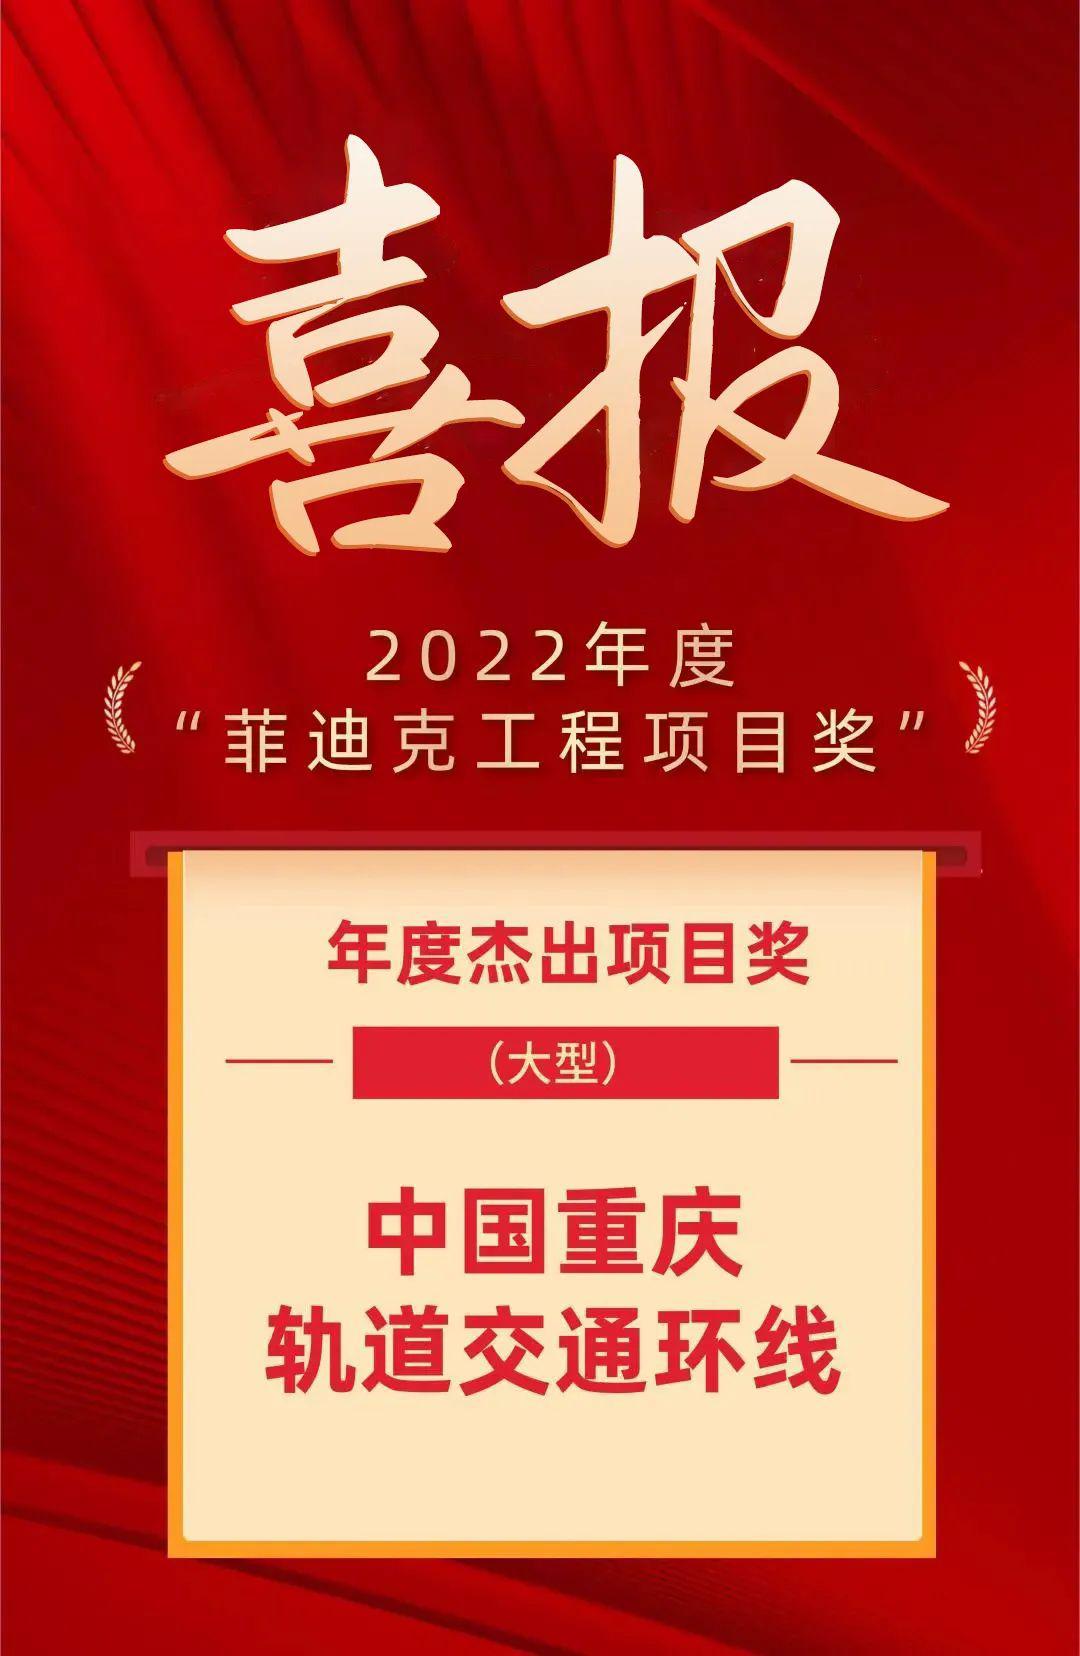 ?重庆轨道交通环线荣获2022年度“菲迪克工程项目奖”